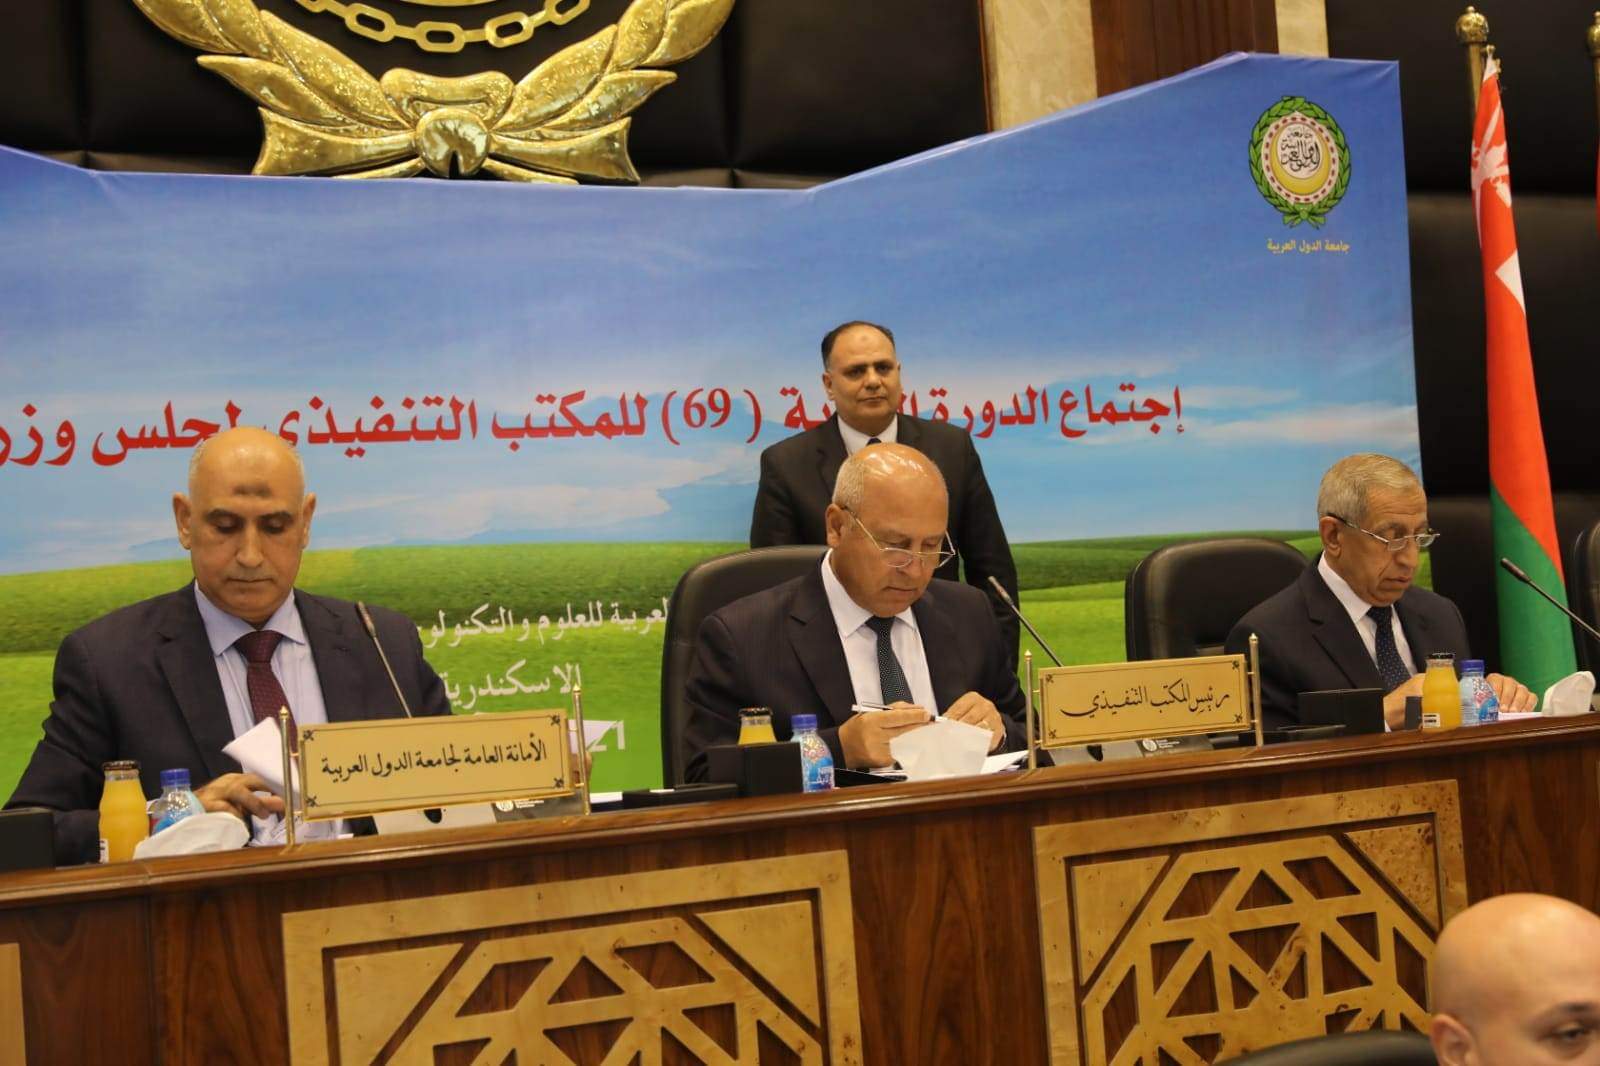 الوزير: مصر تعمل بجدية فى سبيل تعزيز وتقوية حركة النقل لربط الدول العربية براً وبحرا وجوا
